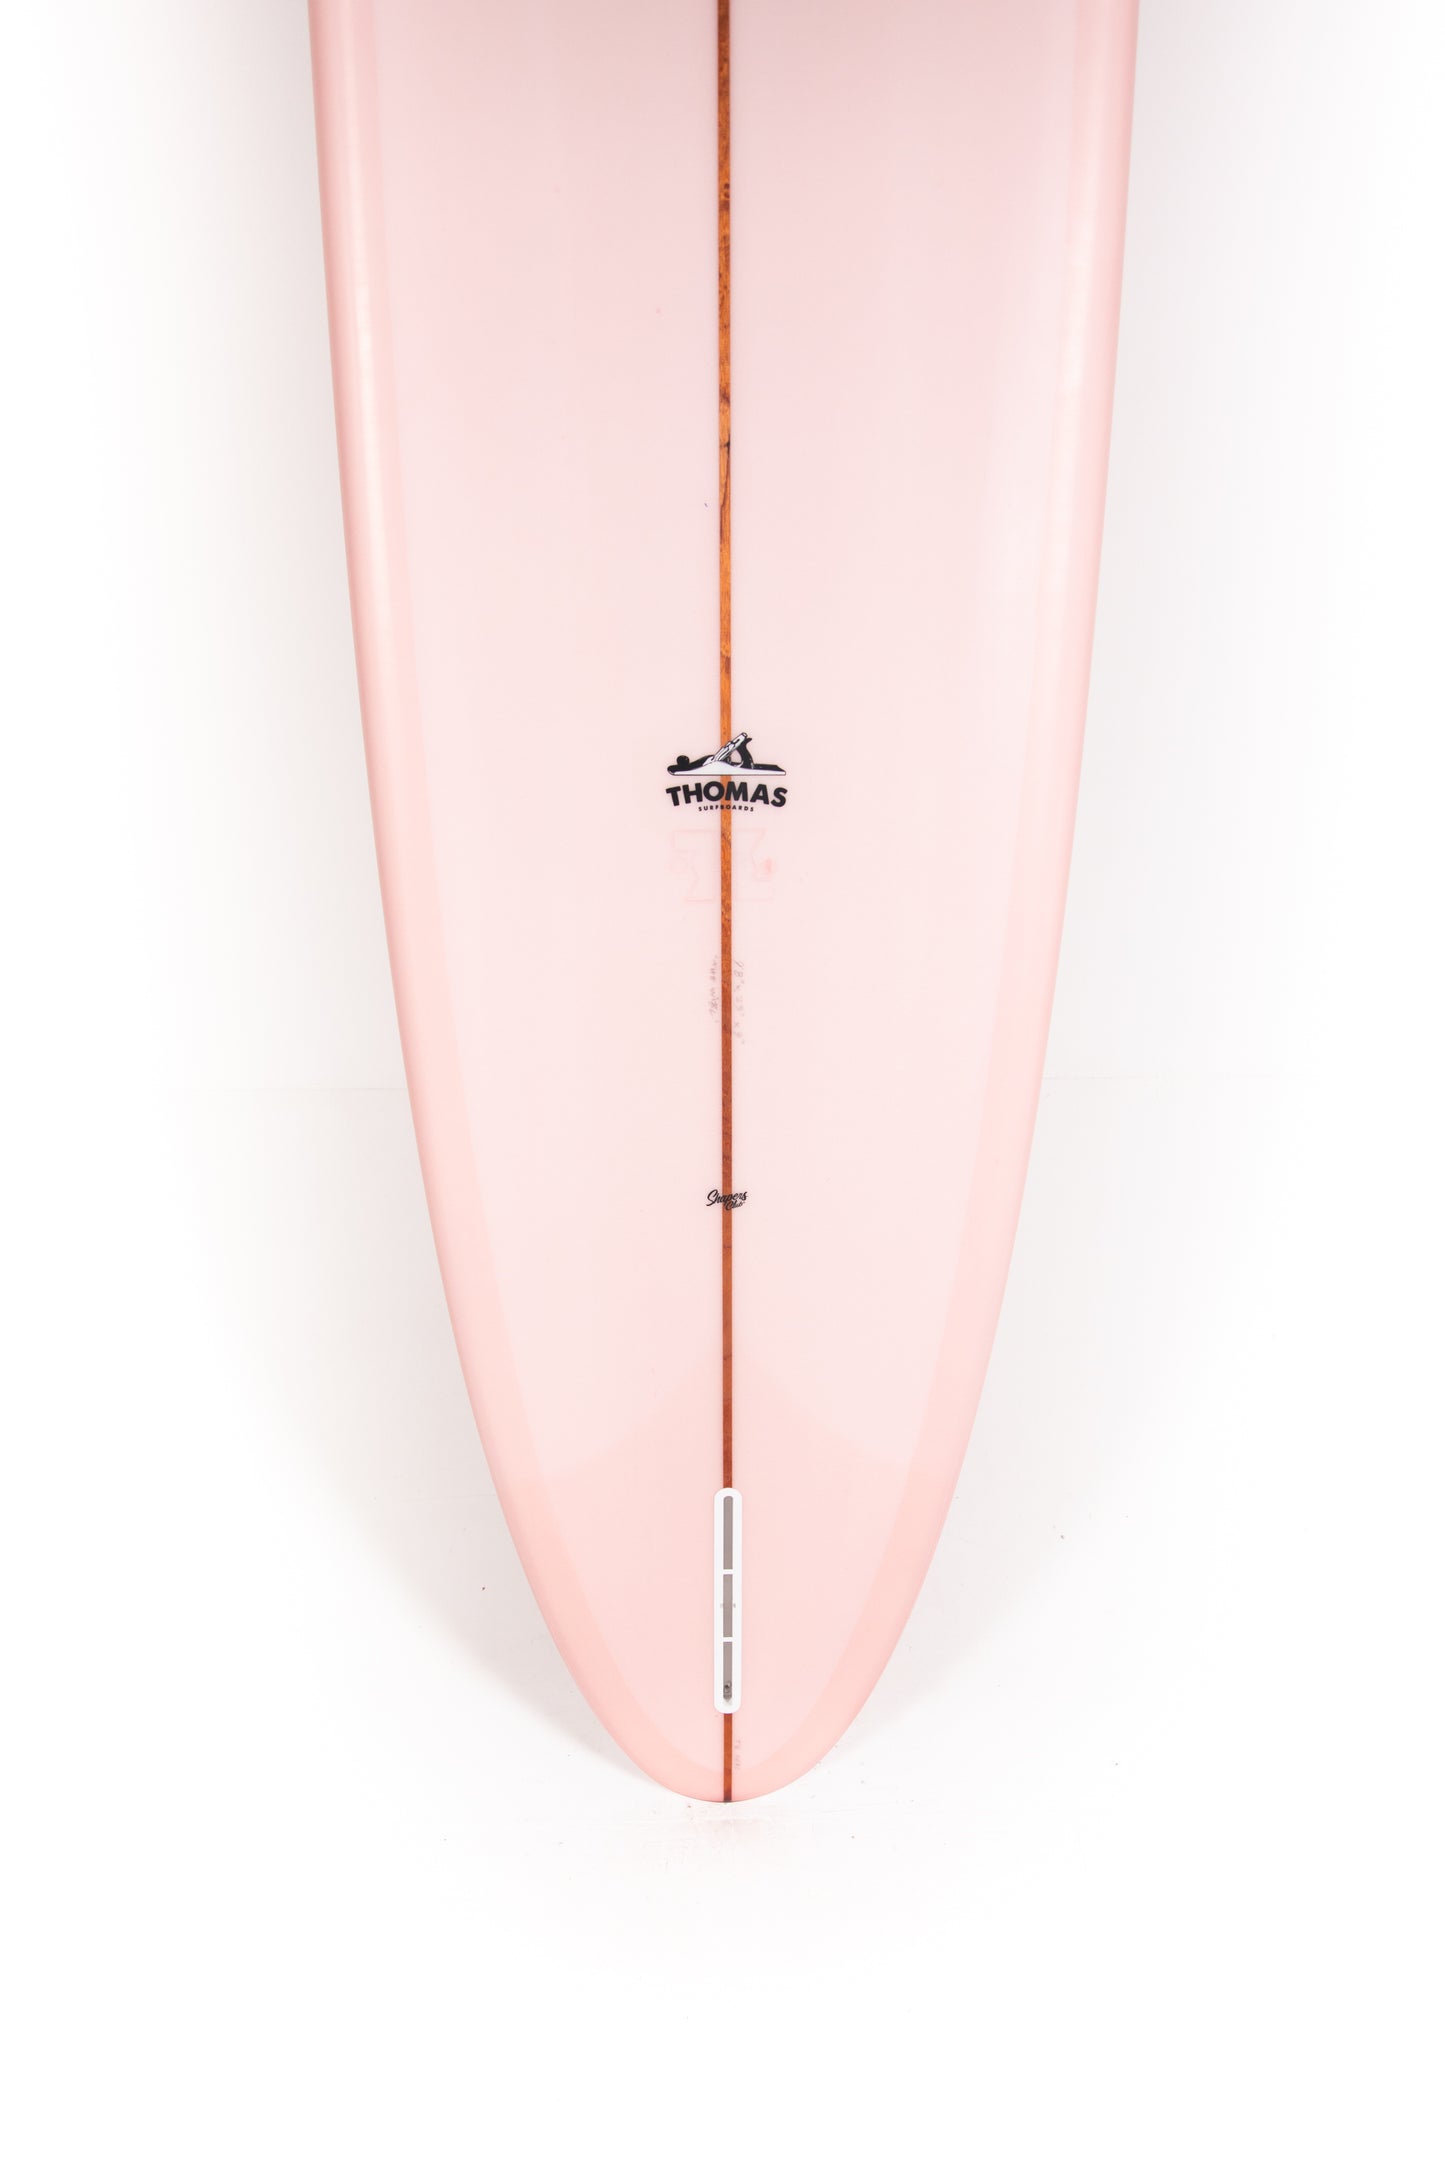 
                  
                    Pukas-Surf-Shop-Thomas-Bexon-Surfboards-Wizl-Thomas-Bexon-9_8_-WIZL98ROSE
                  
                